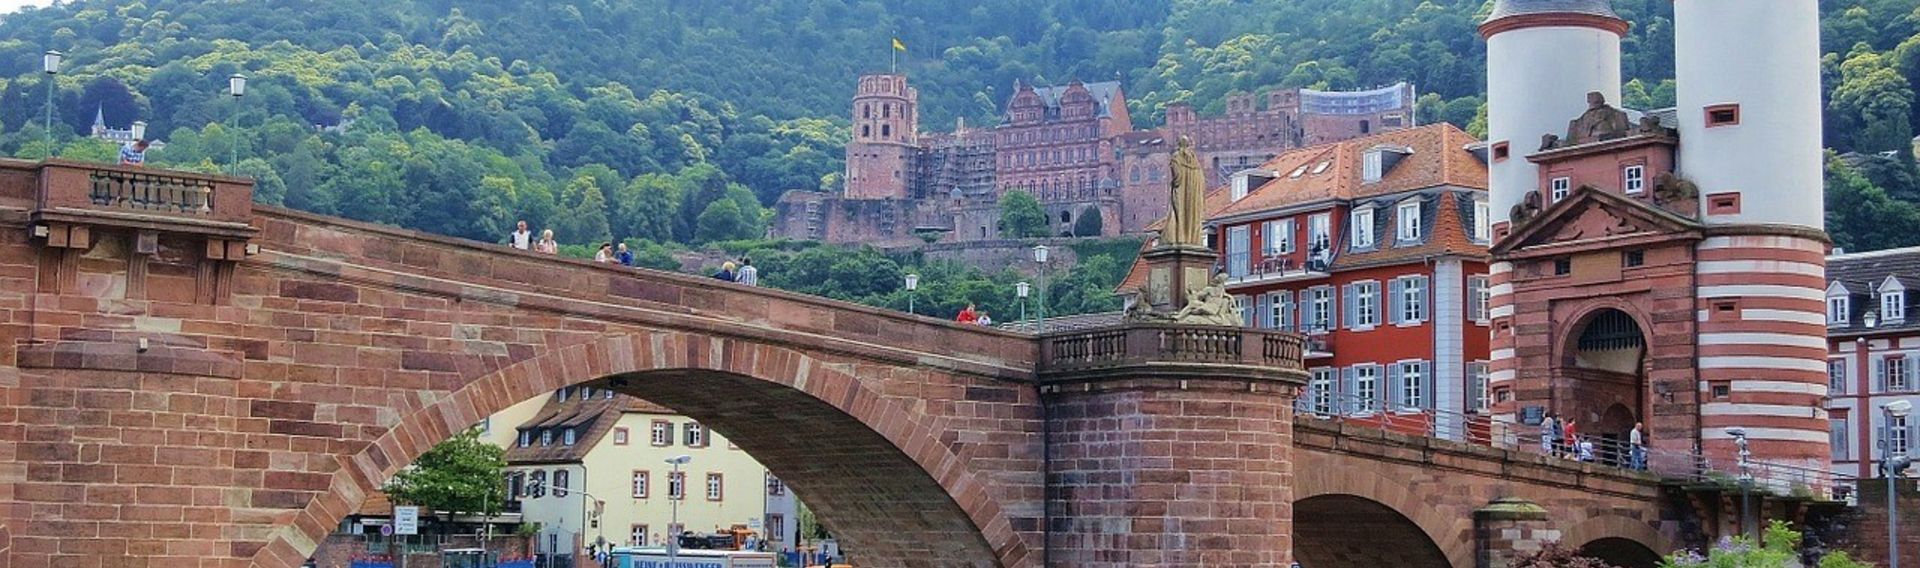 Schloss Heidelberg und Schlossgarten mit Hund